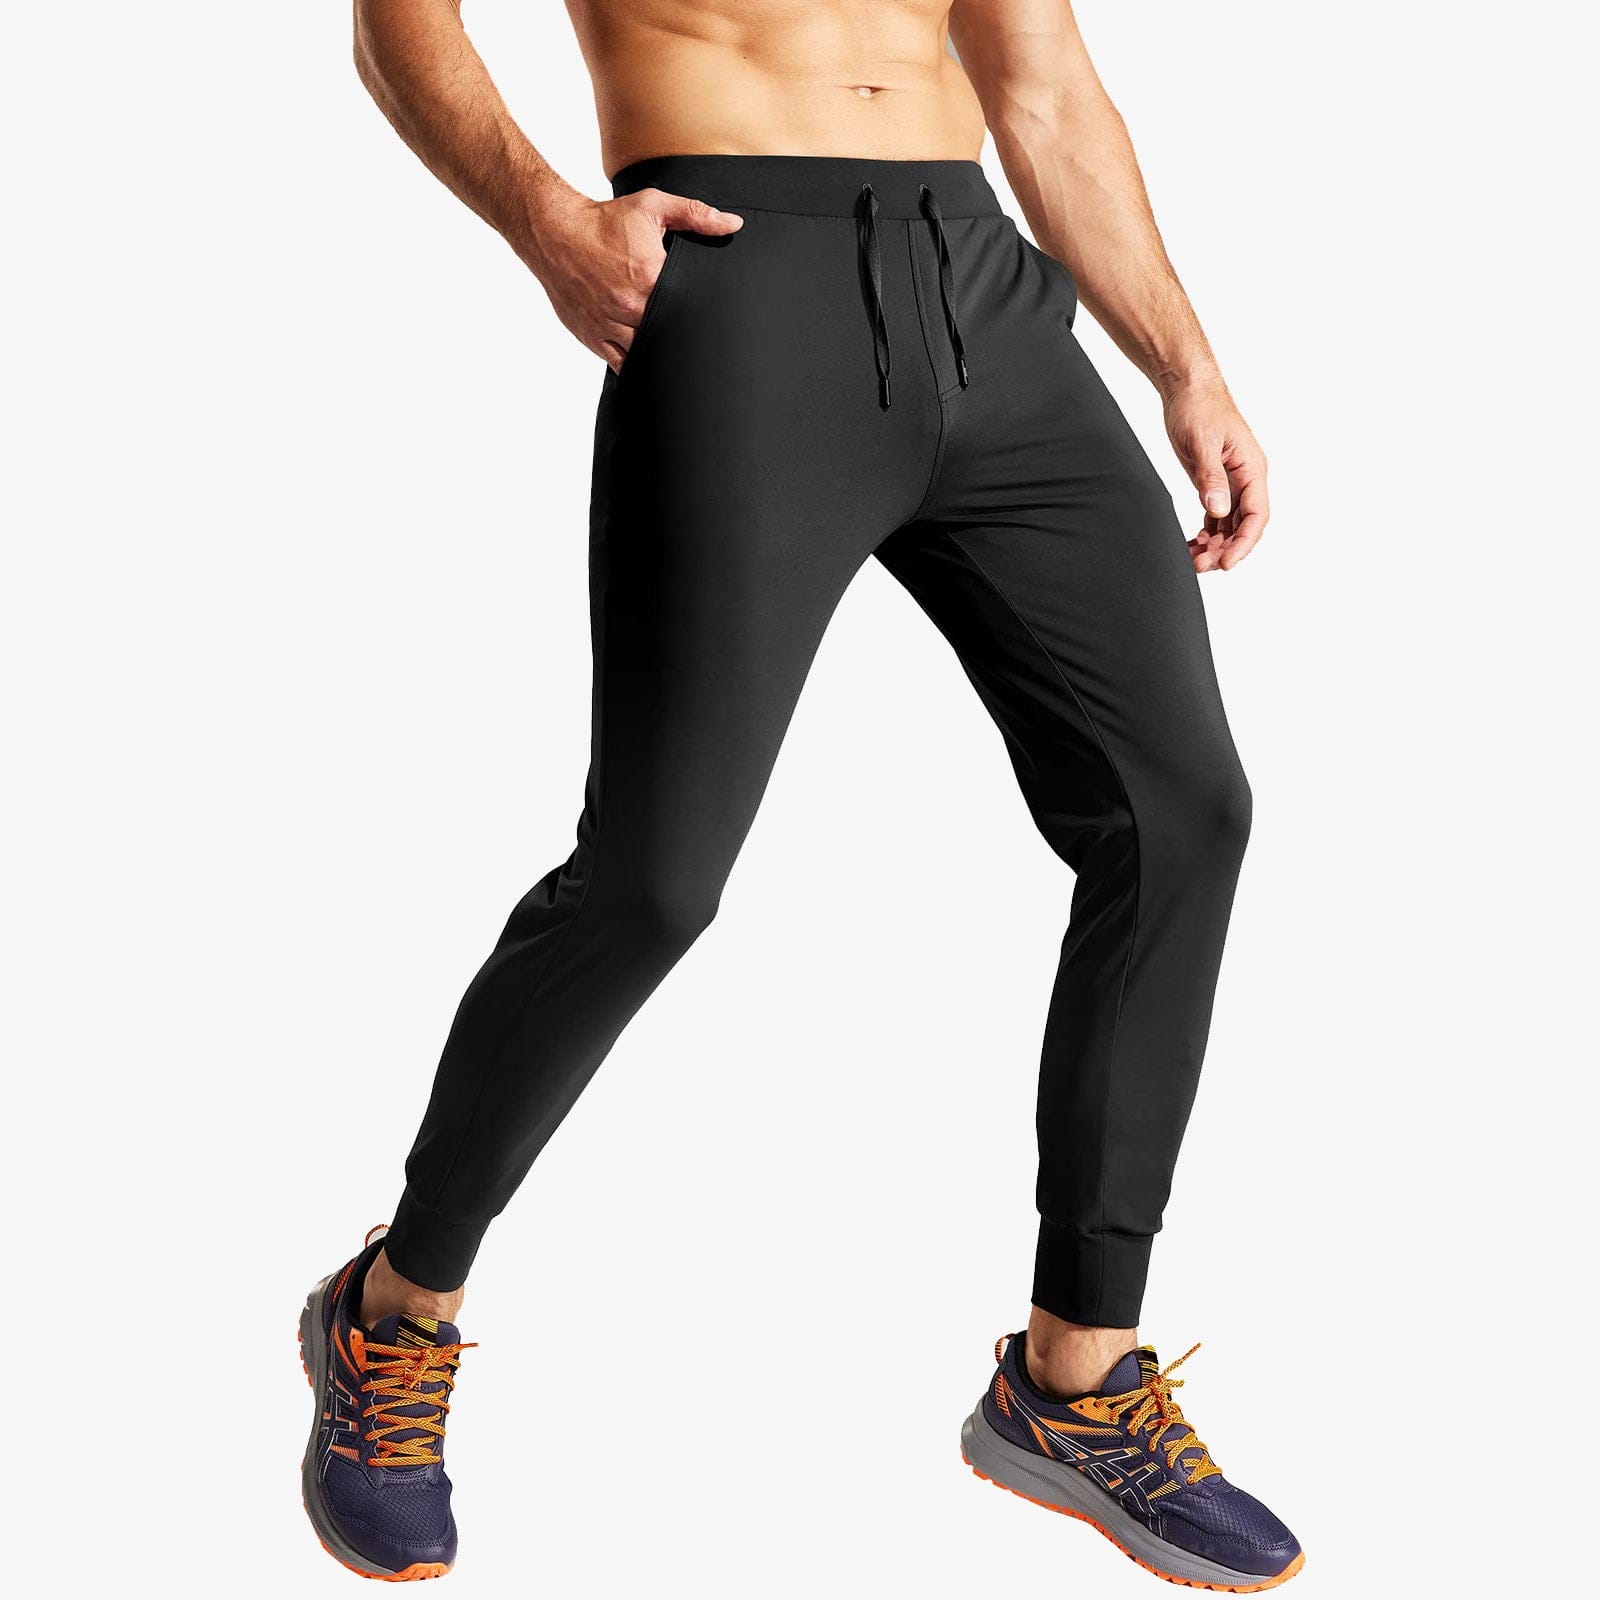 Men's Jogger Sweatpants Slim Fit Nylon Stretch Athletic Track Pants Men Train Pants Black / S MIER